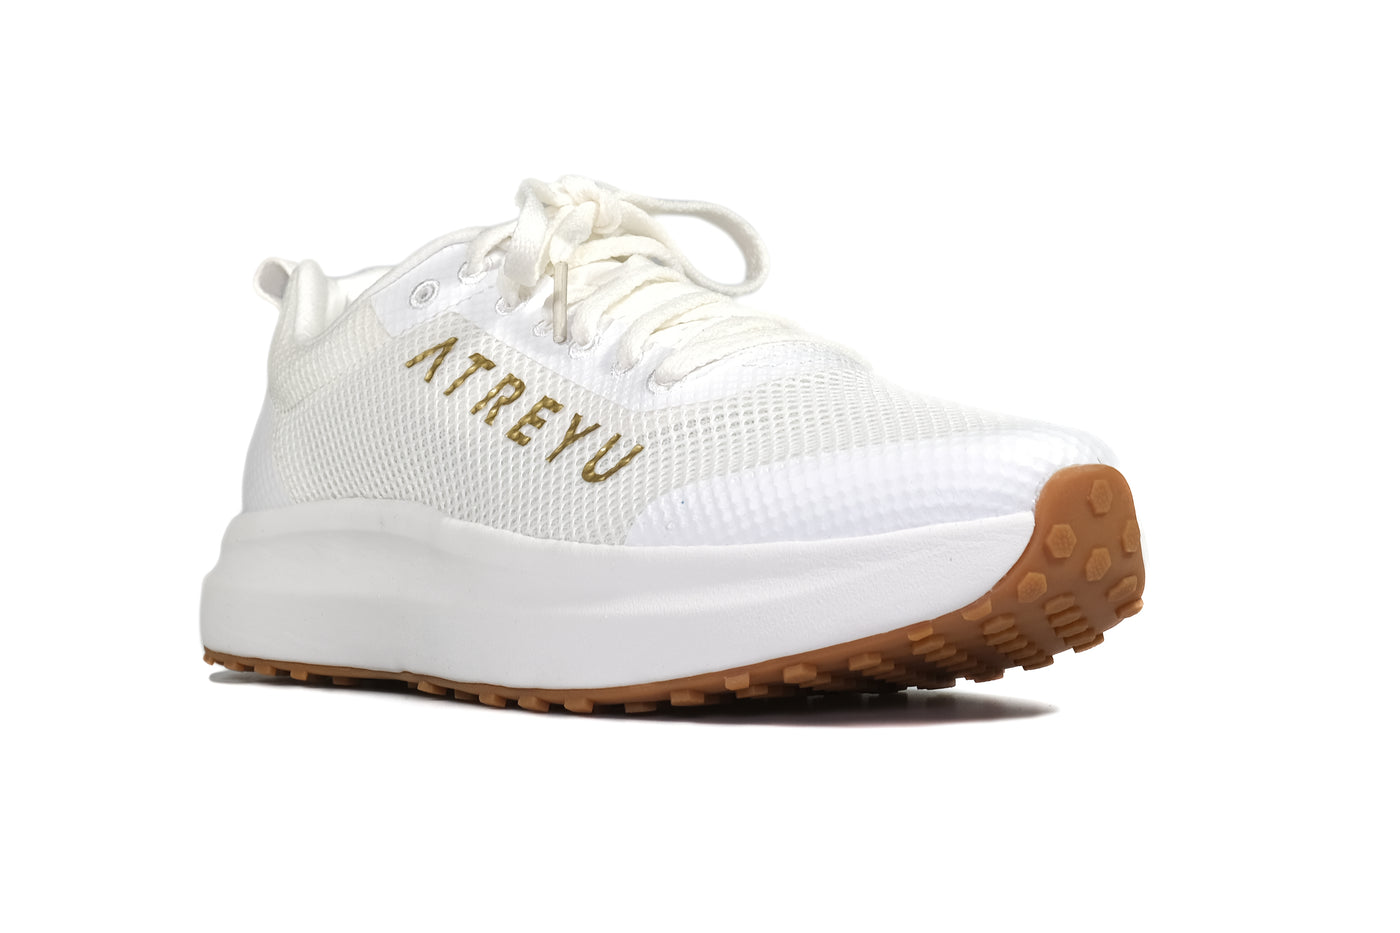 Daily Trainer - Atreyu Running Shoes Angle White